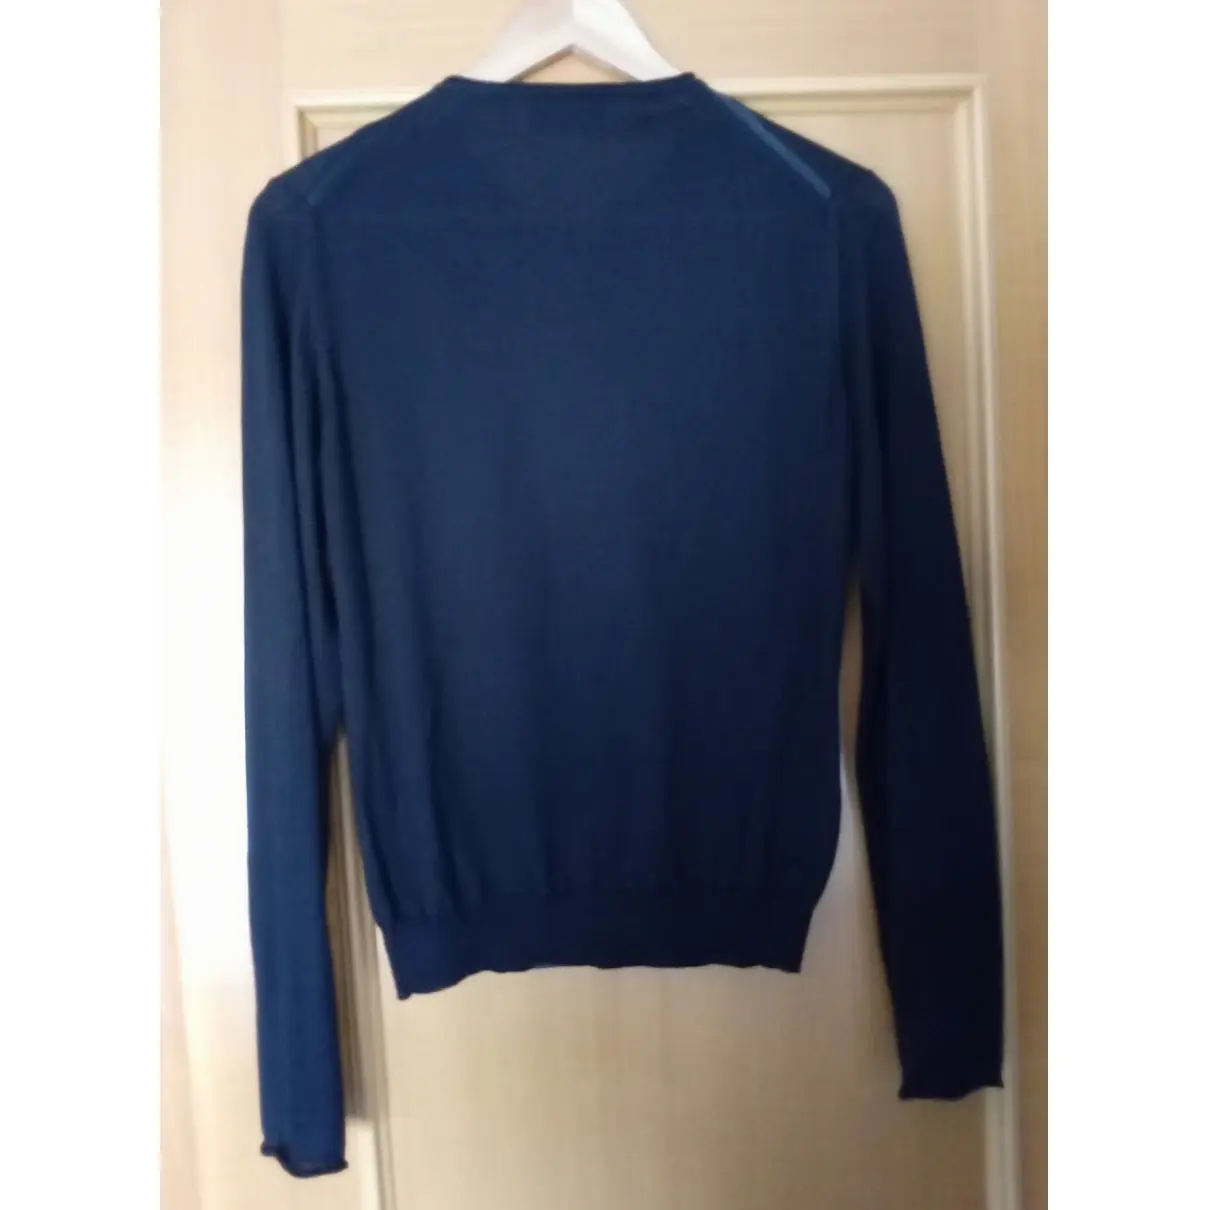 Buy Yves Saint Laurent Cashmere short vest online